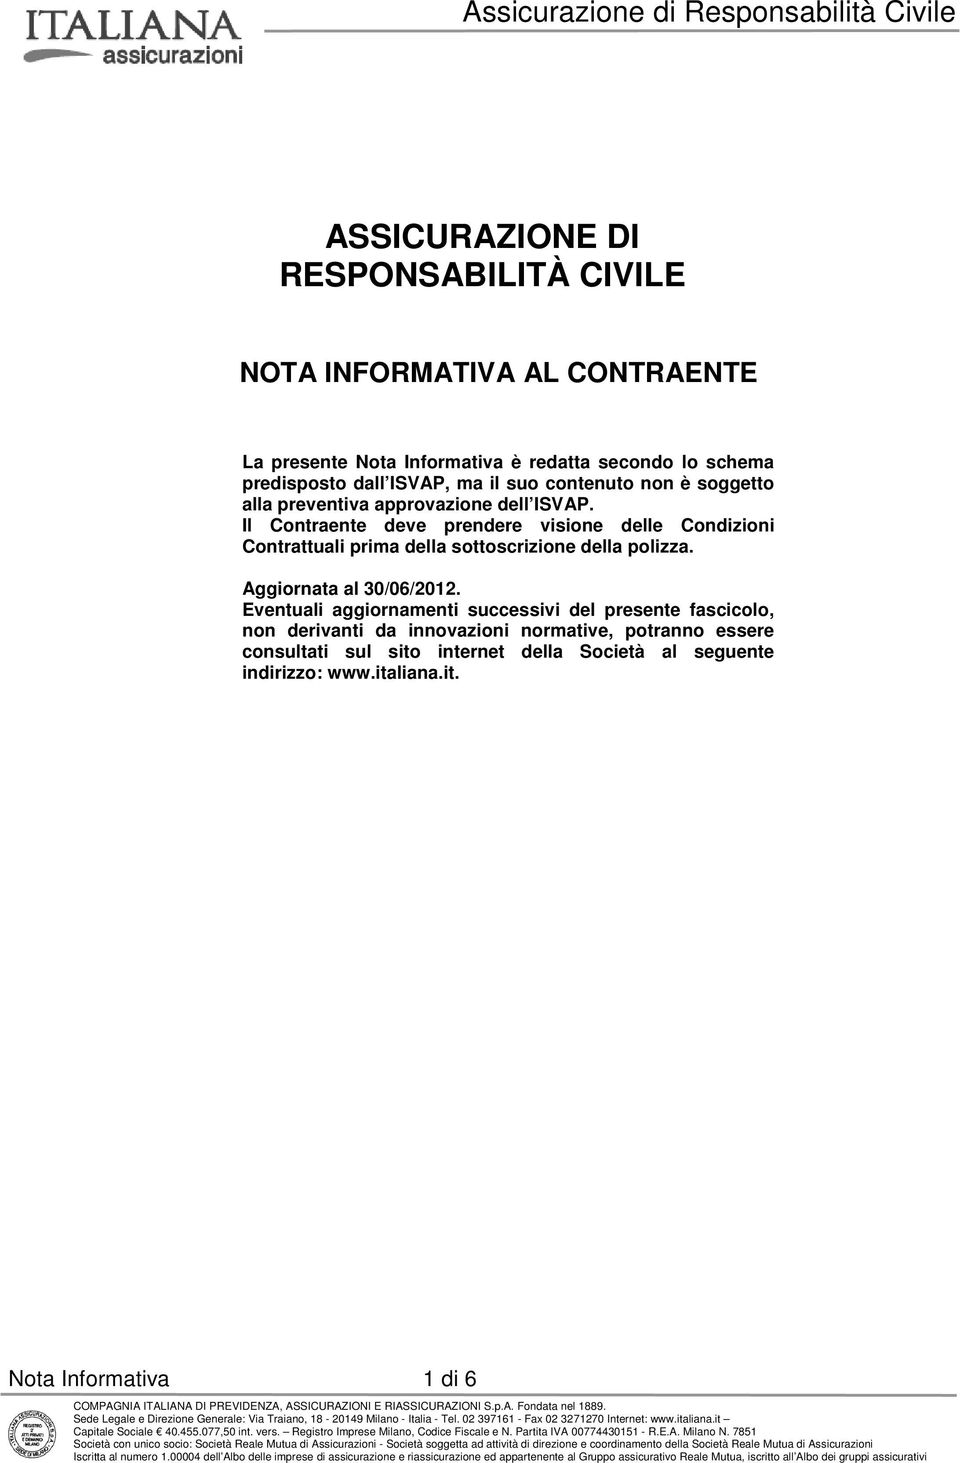 Il Contraente deve prendere visione delle Condizioni Contrattuali prima della sottoscrizione della polizza. Aggiornata al 30/06/2012.